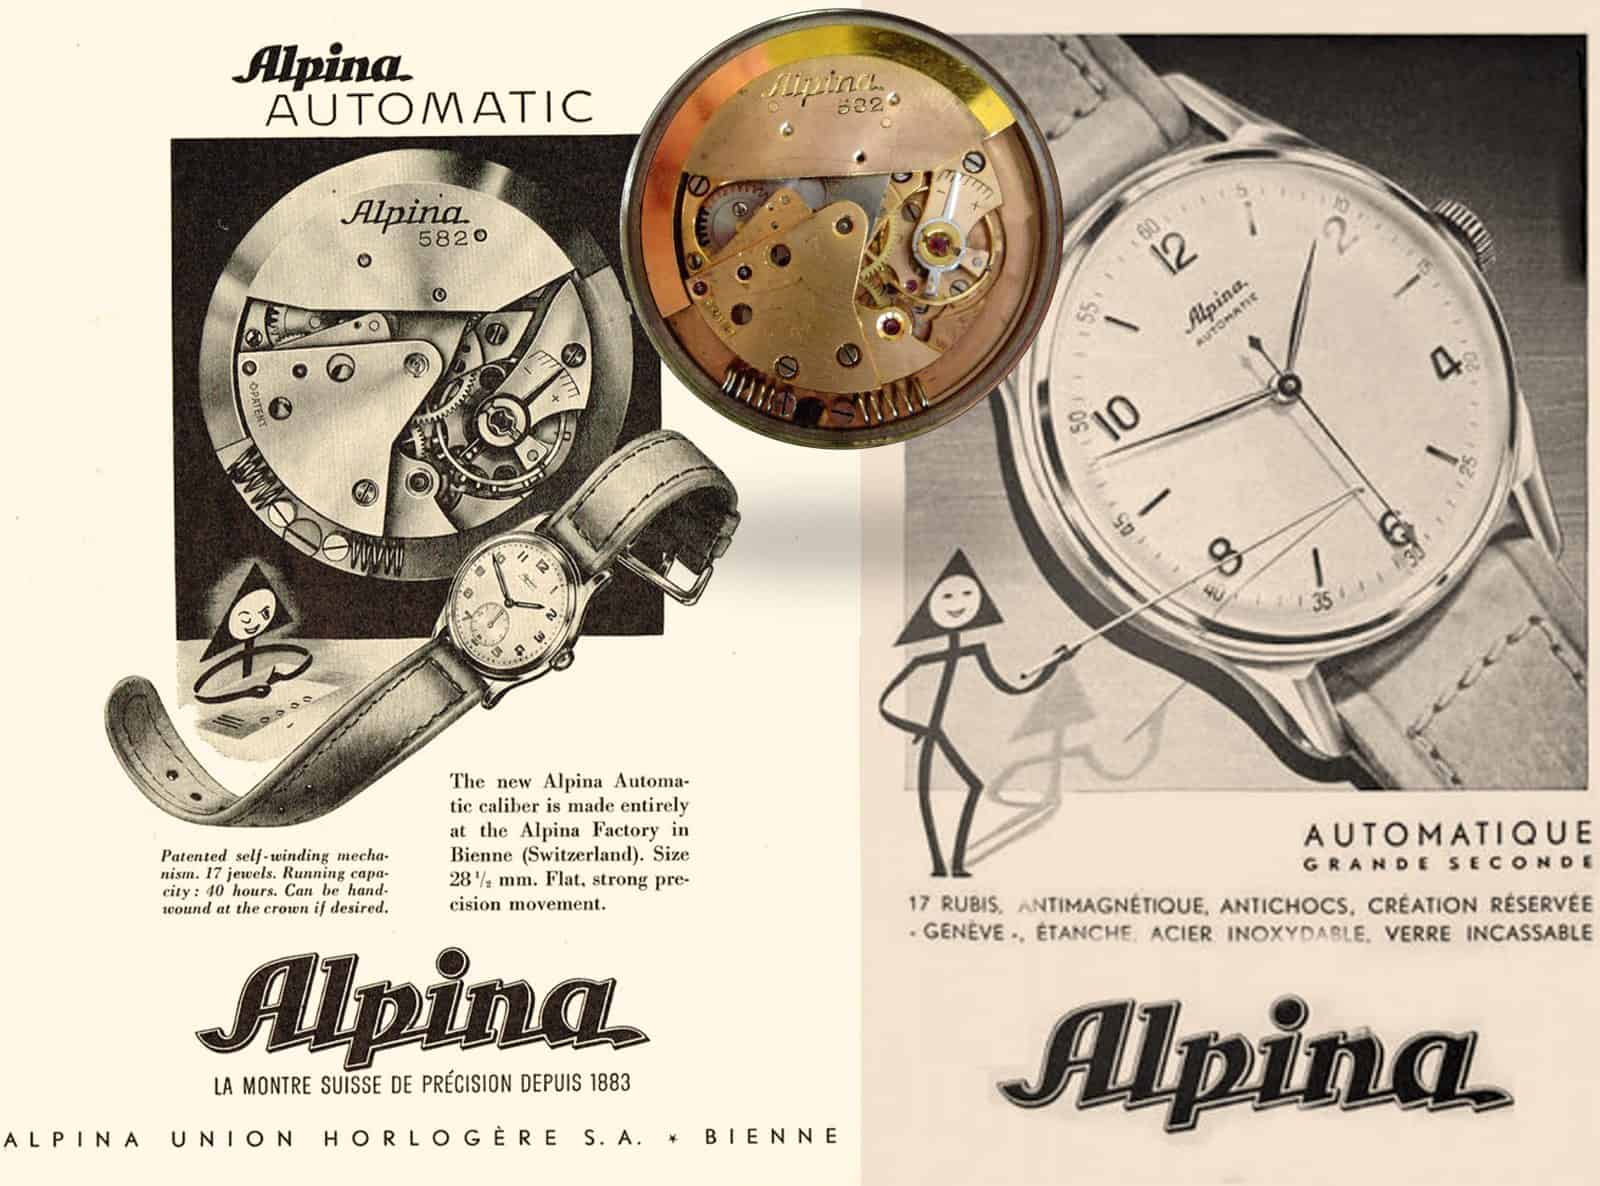 Anzeigen für die Alpina Automatik-Armbanduhren aus den späten 1940-er Jahren. Kaliber 582 